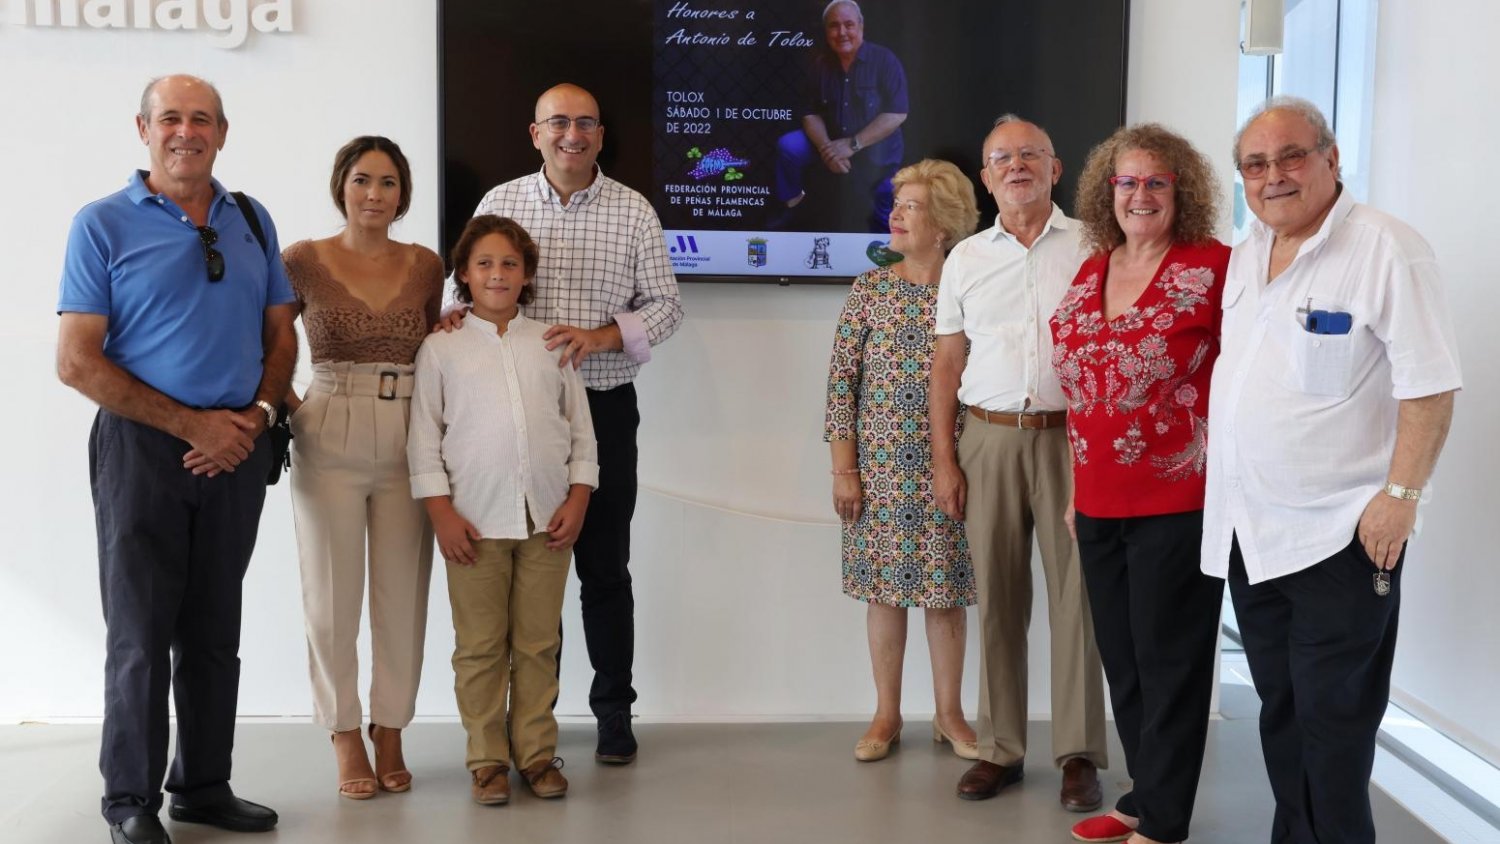 La XXV edición del Encuentro de Peñas Flamencas de Málaga rinde homenaje a Antonio de Tolox